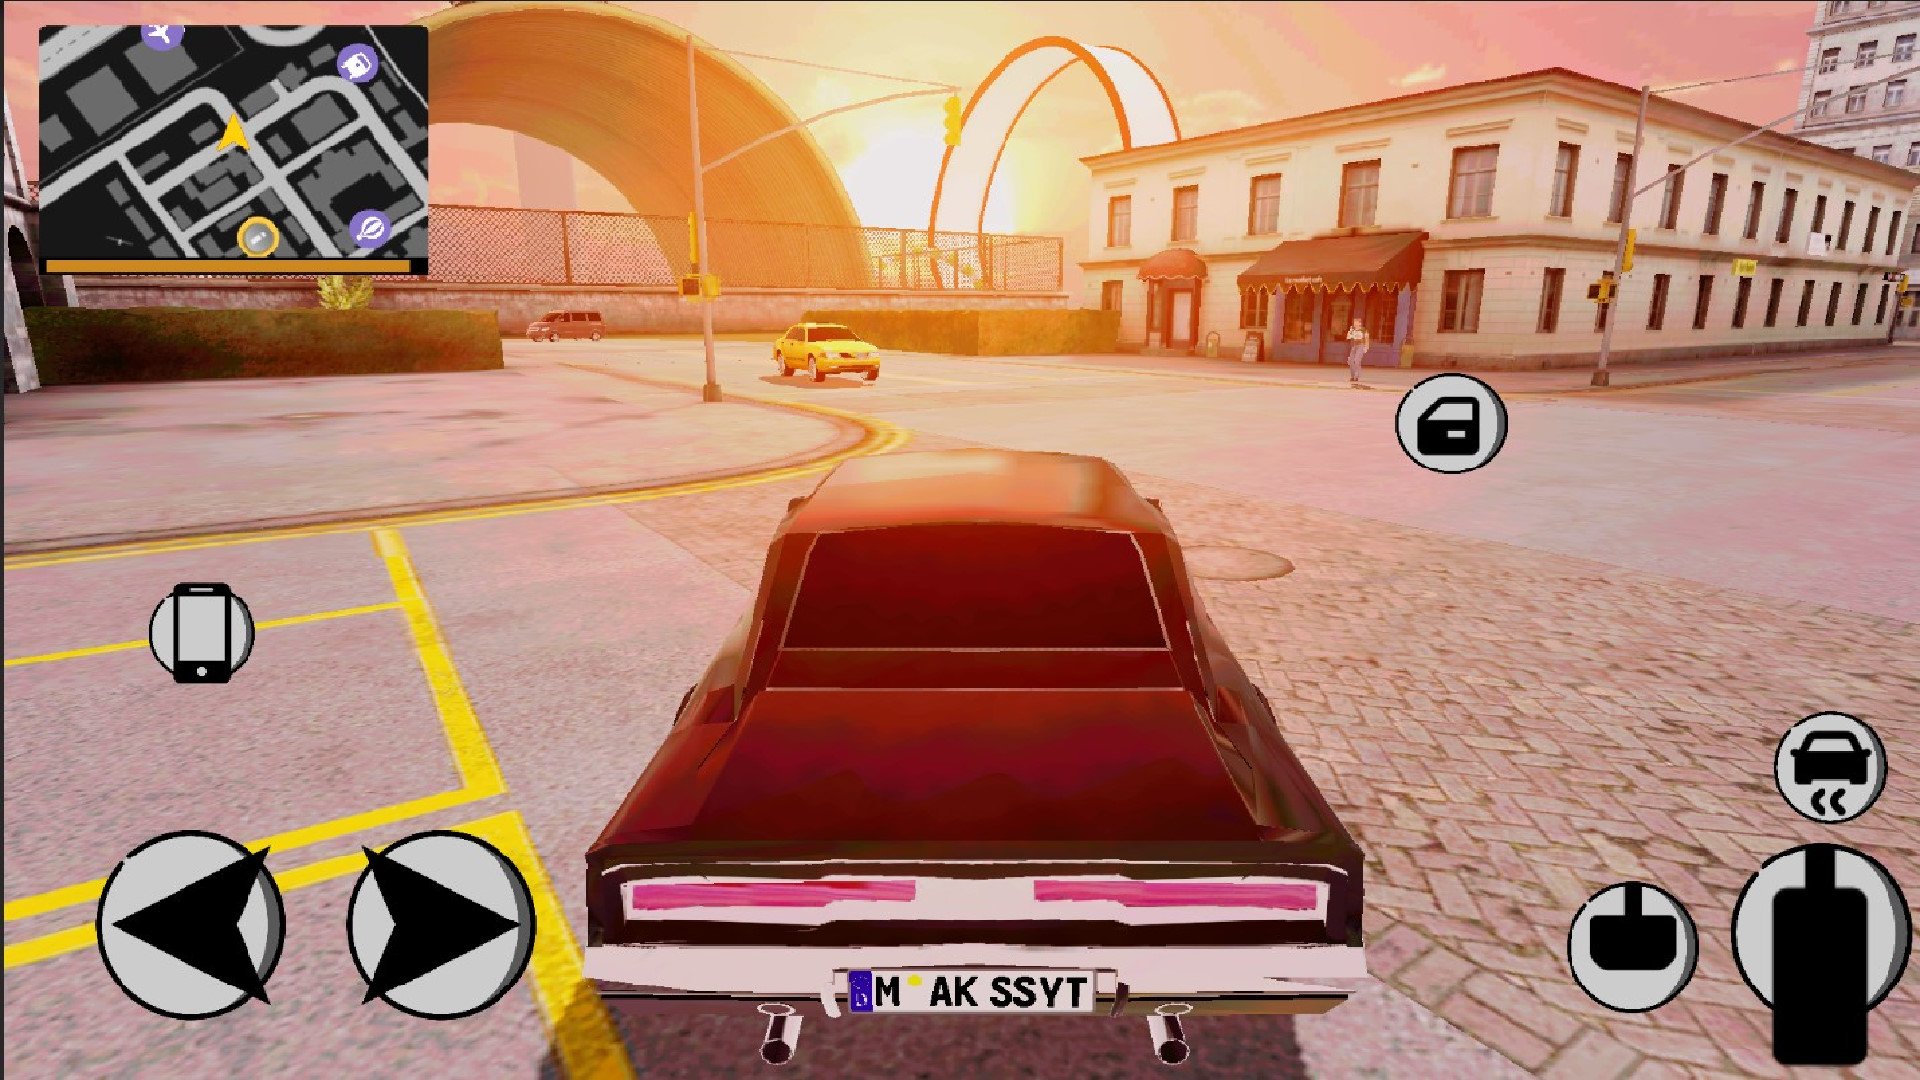 
          В Google Play можно бесплатно скачать бюджетную версию GTA с открытым миром и возможностью сесть в любую машину
        